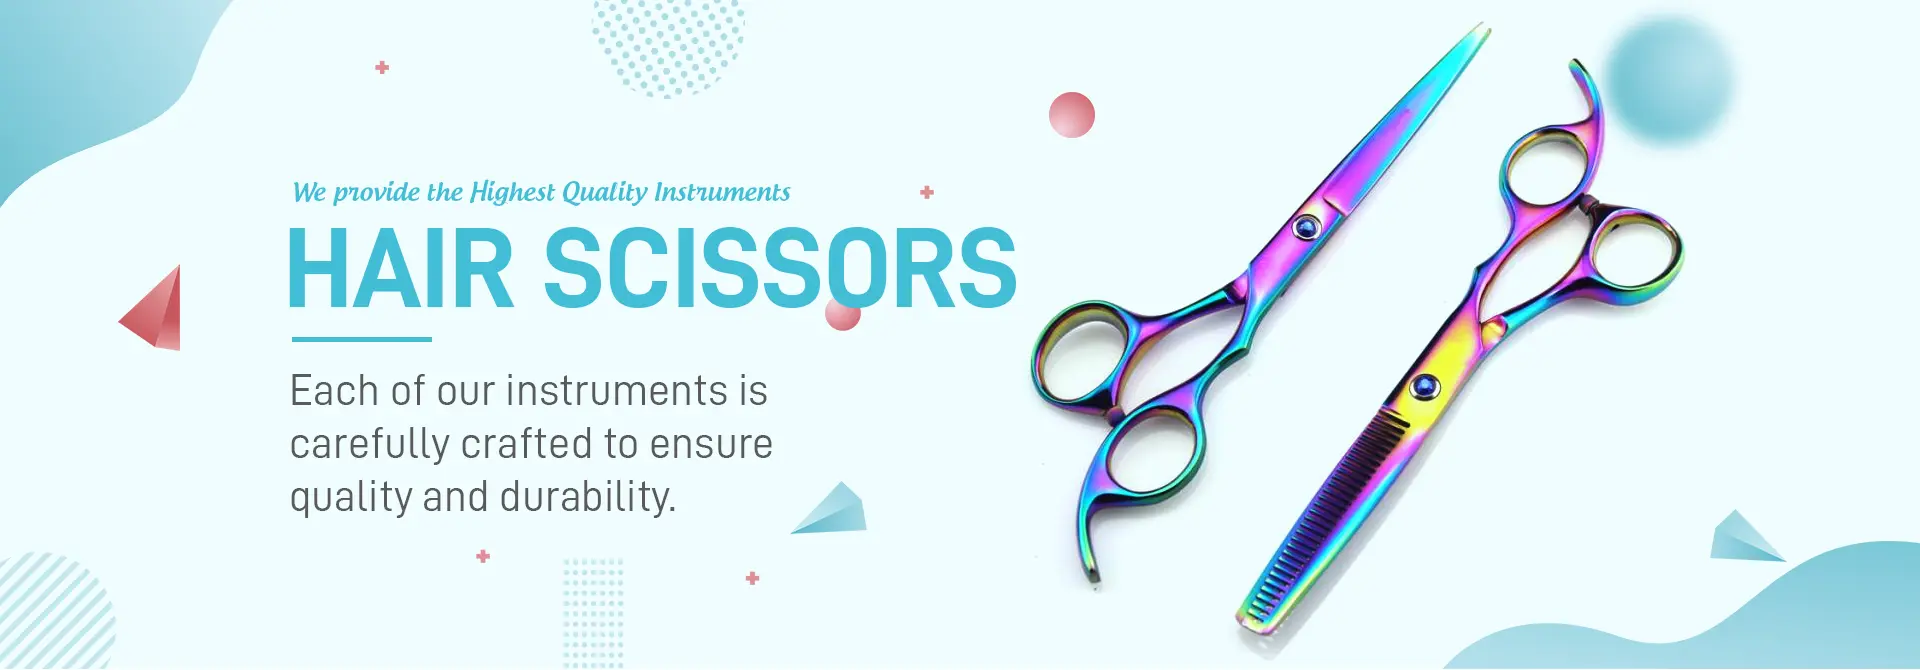 hair-scissors-banner-79832-1712124817